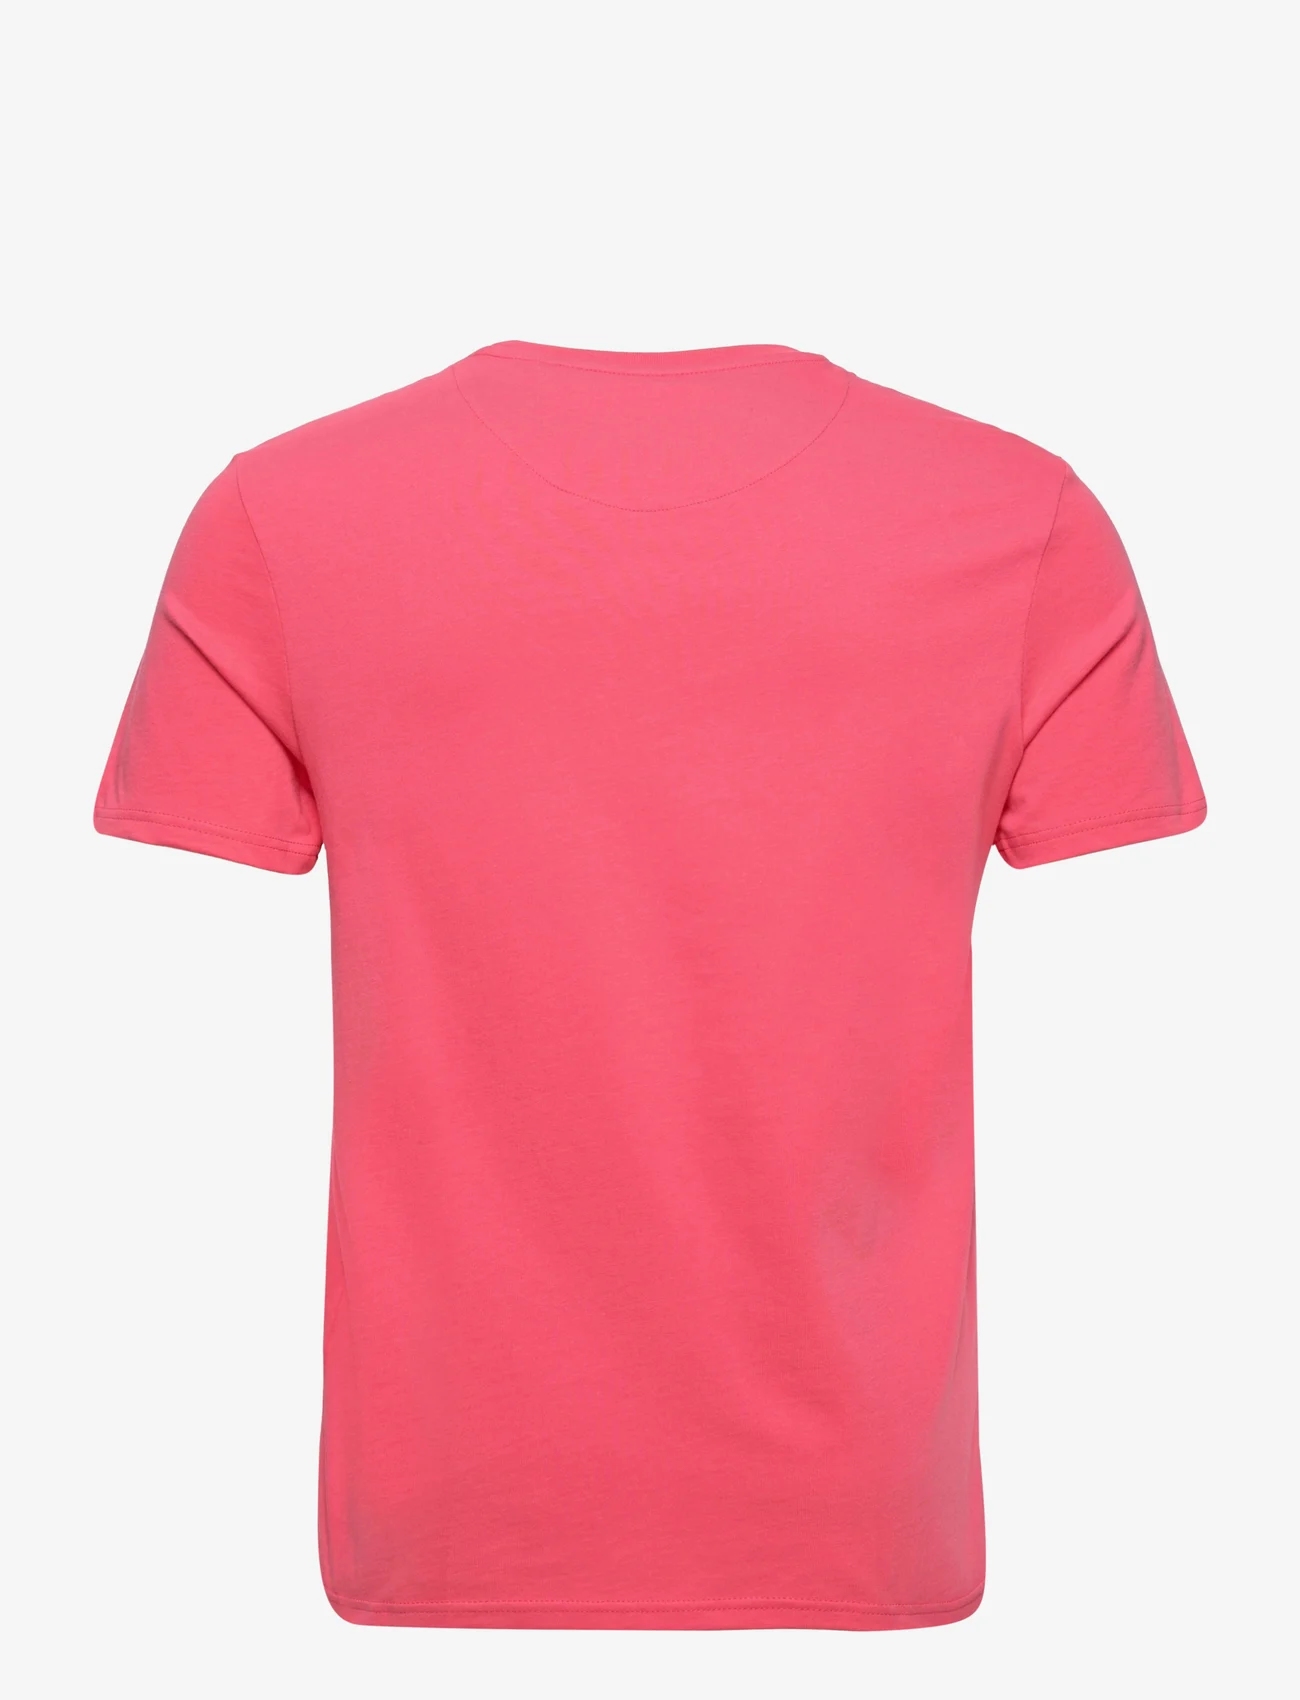 Lyle & Scott - Plain T-Shirt - laveste priser - electric pink - 1